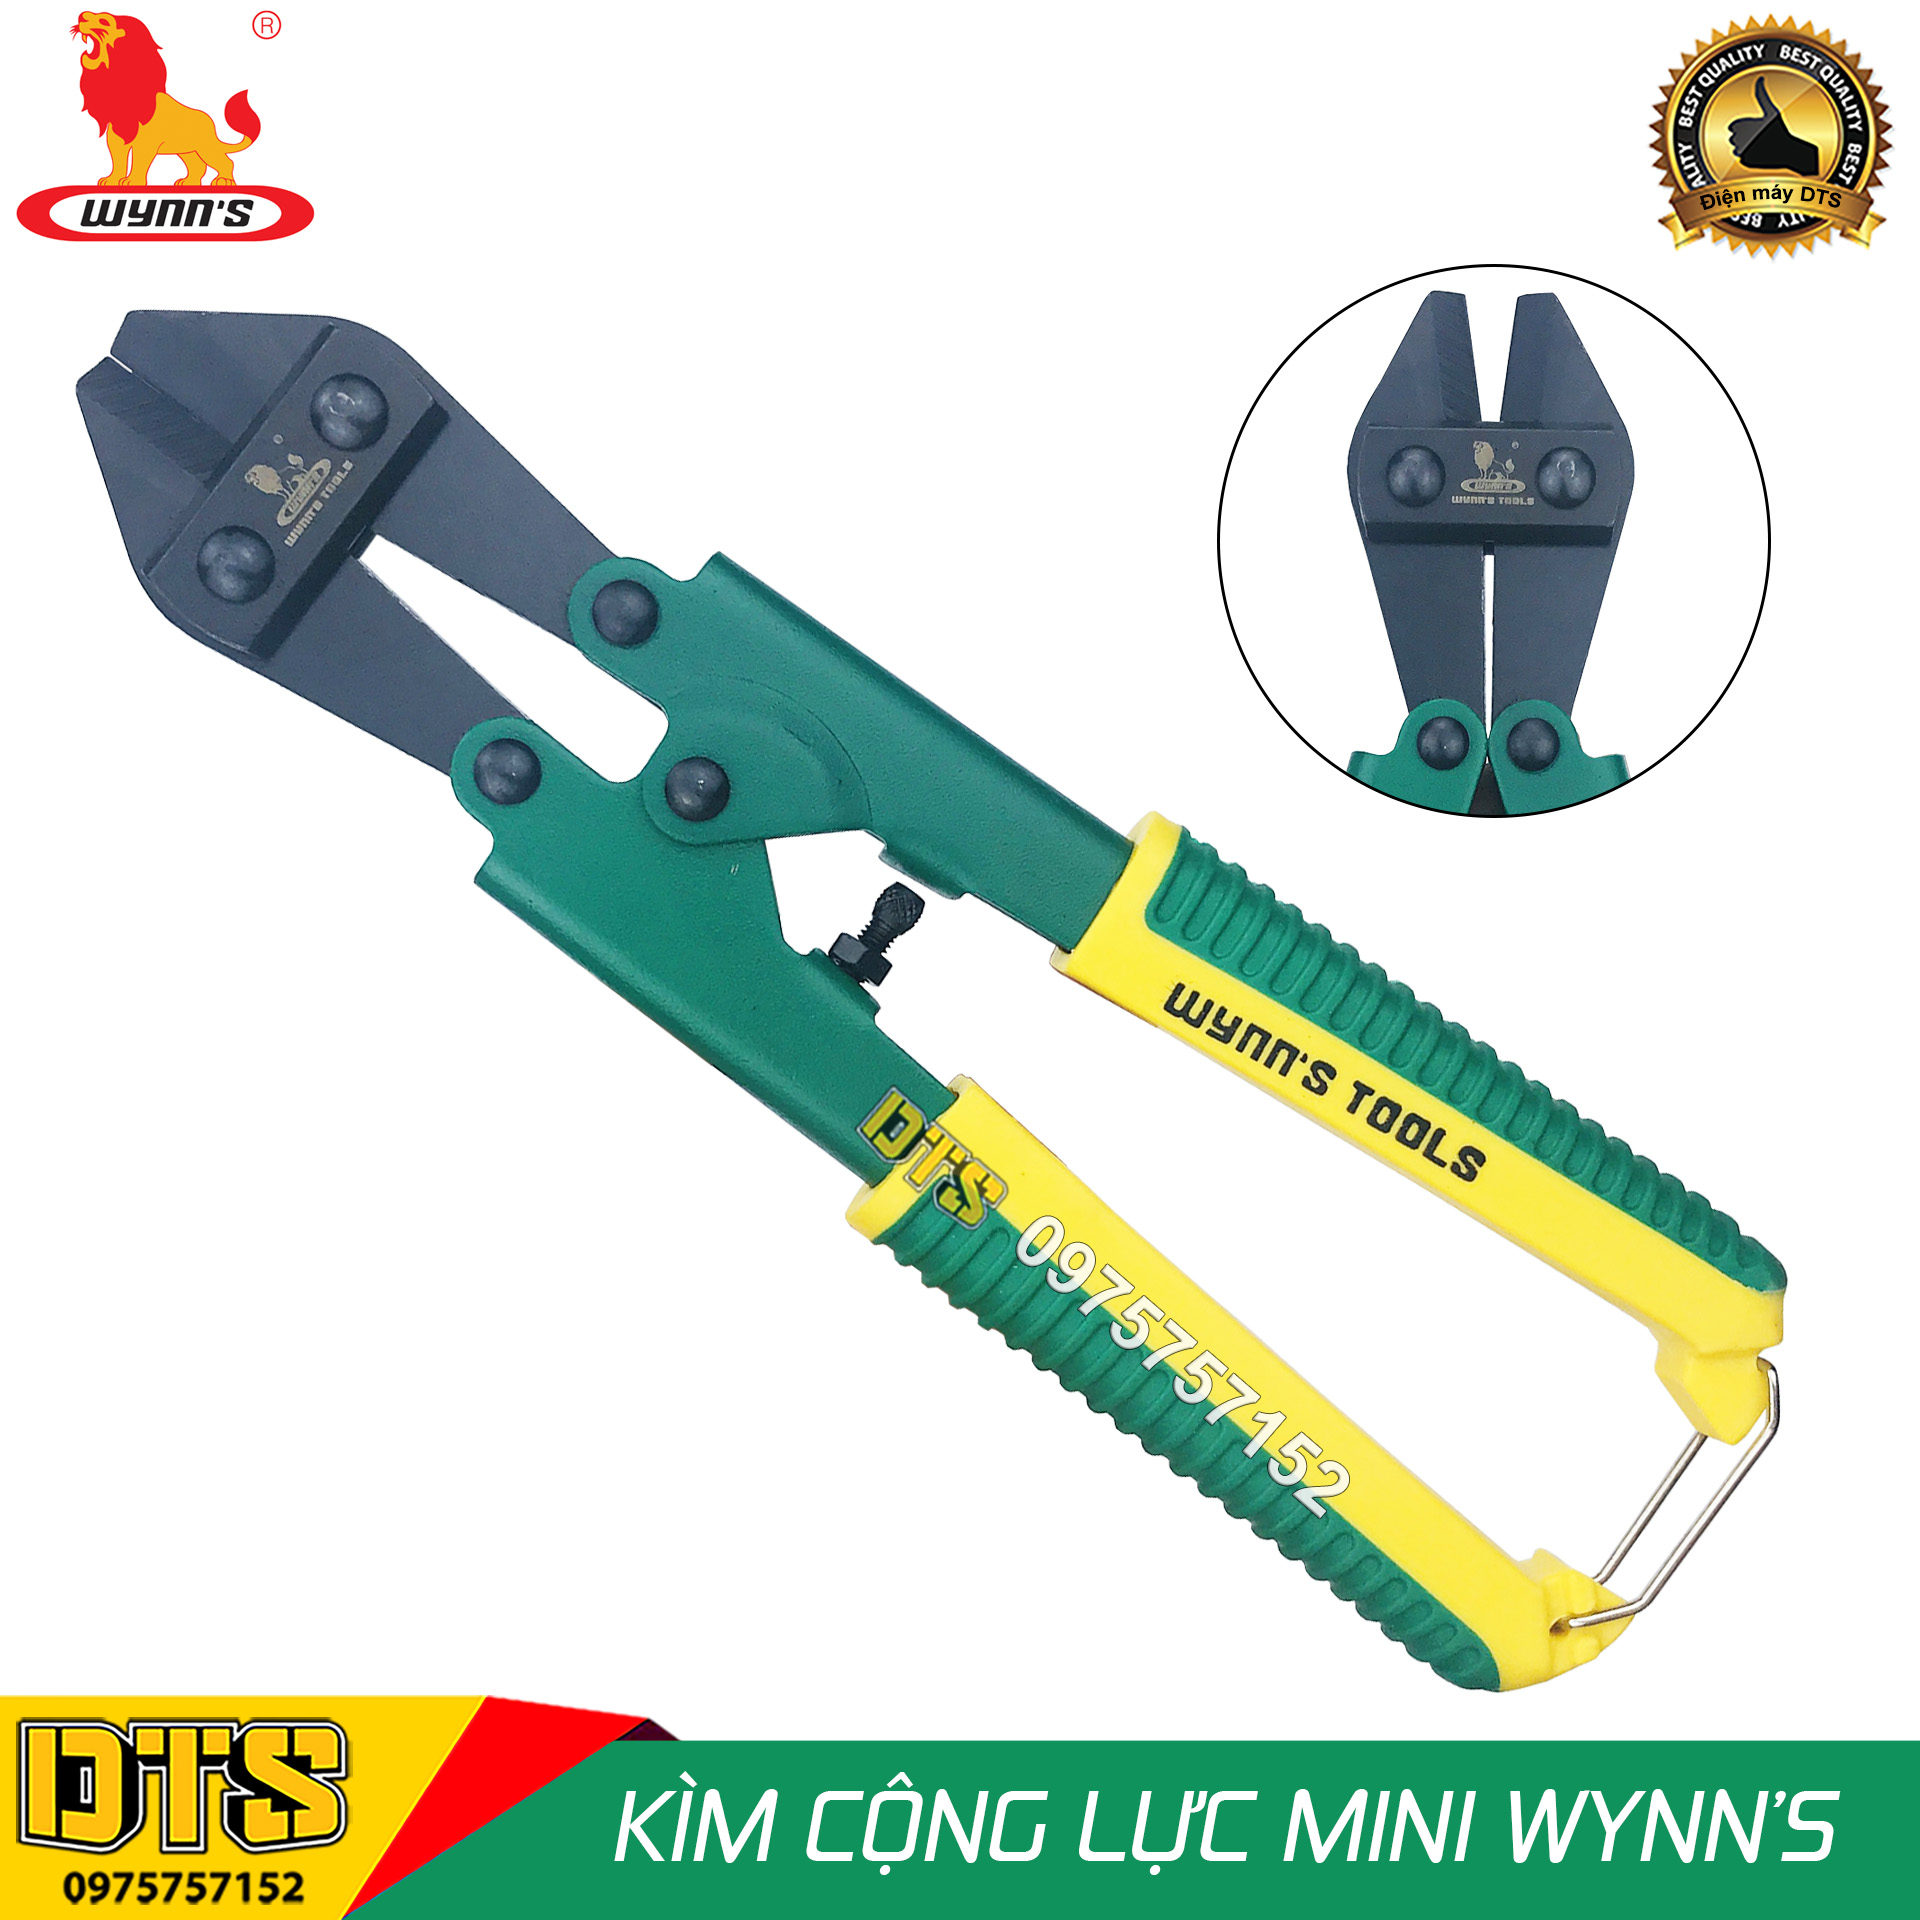 Kìm cộng lực Wynn’s W09 8 inch/ 200mm kìm cắt sắt dây thép chuyên nghiệp kìm cộng lực tay mini chuyên dụng